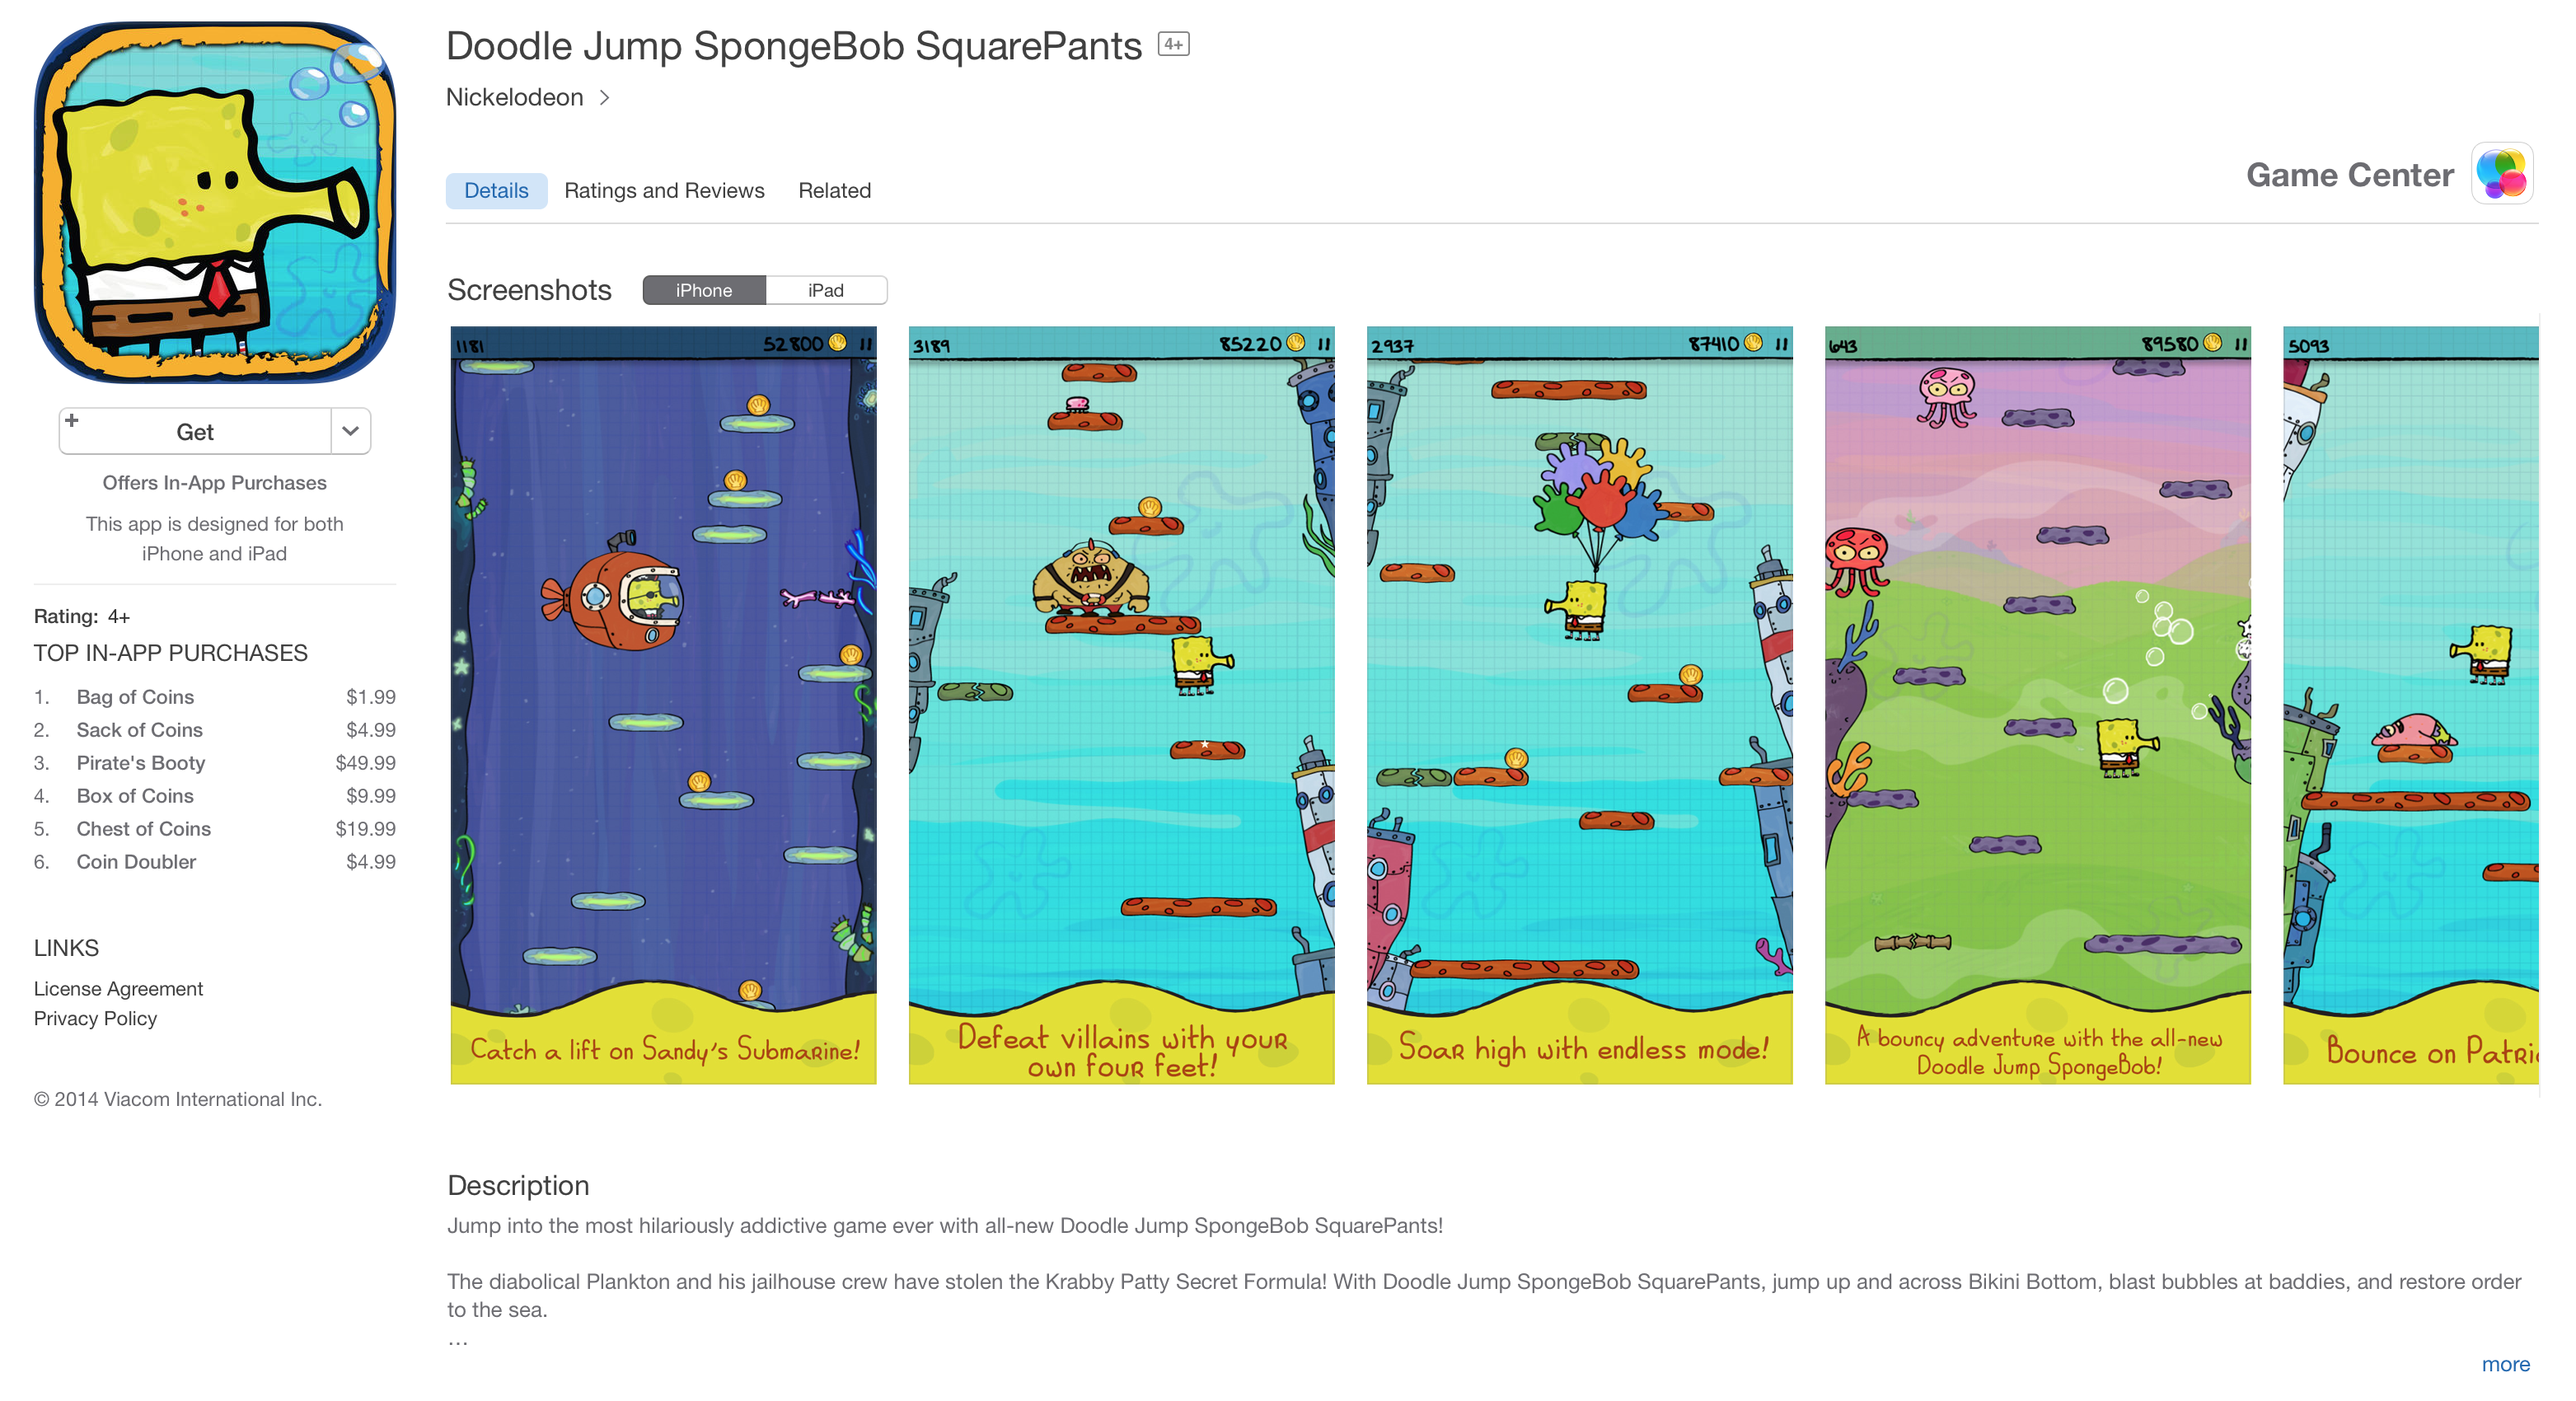 spongebob-doodle-jump-app-of-the-week-ios